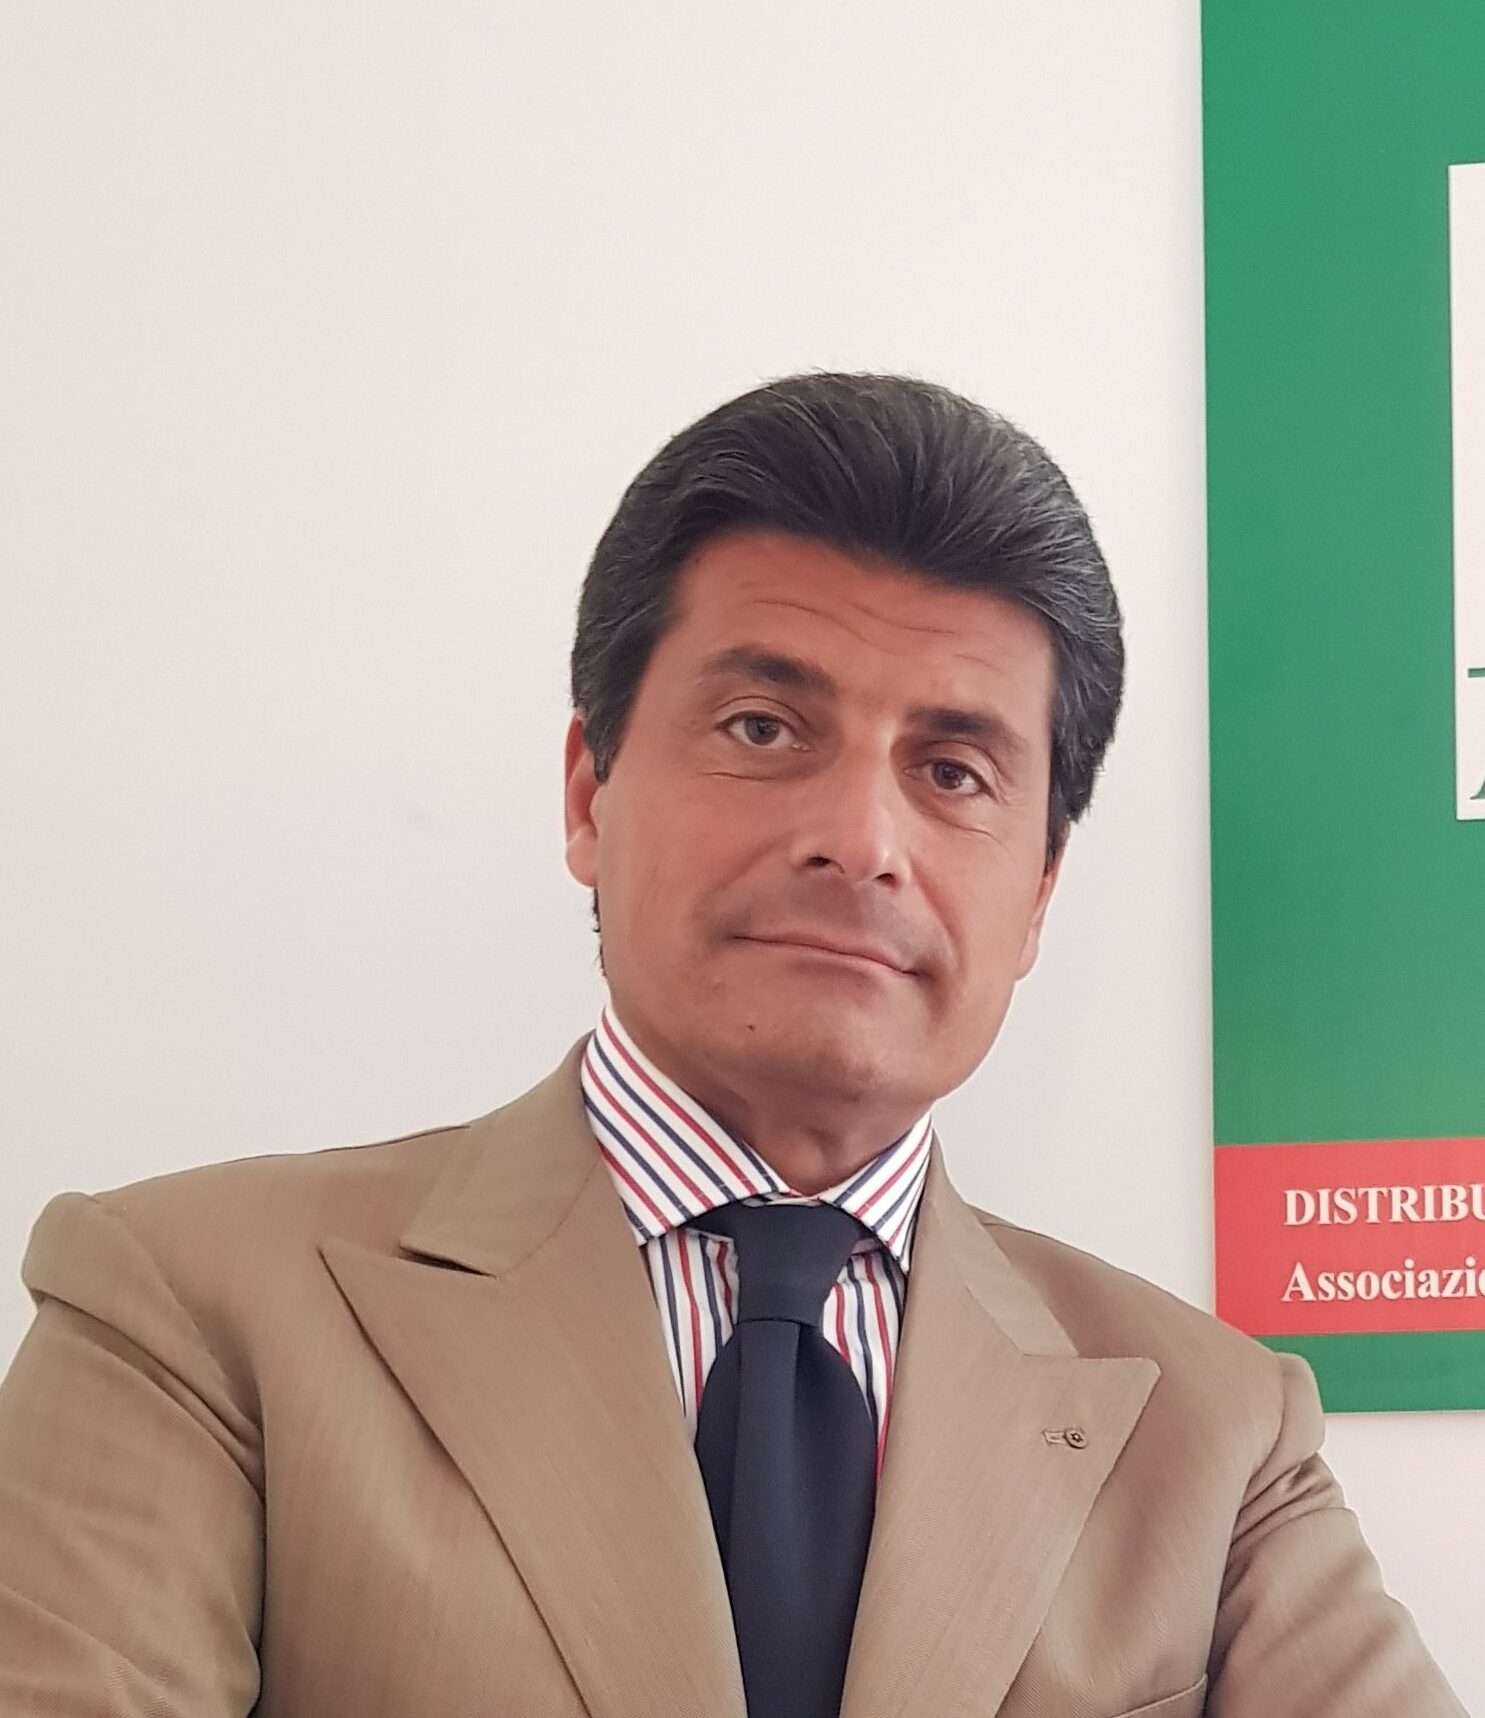 Scopri di più sull'articolo Intervista al Presidente Petrone su Pharma Boardroom: temi core dell’associazione e futuro del pharma italiano